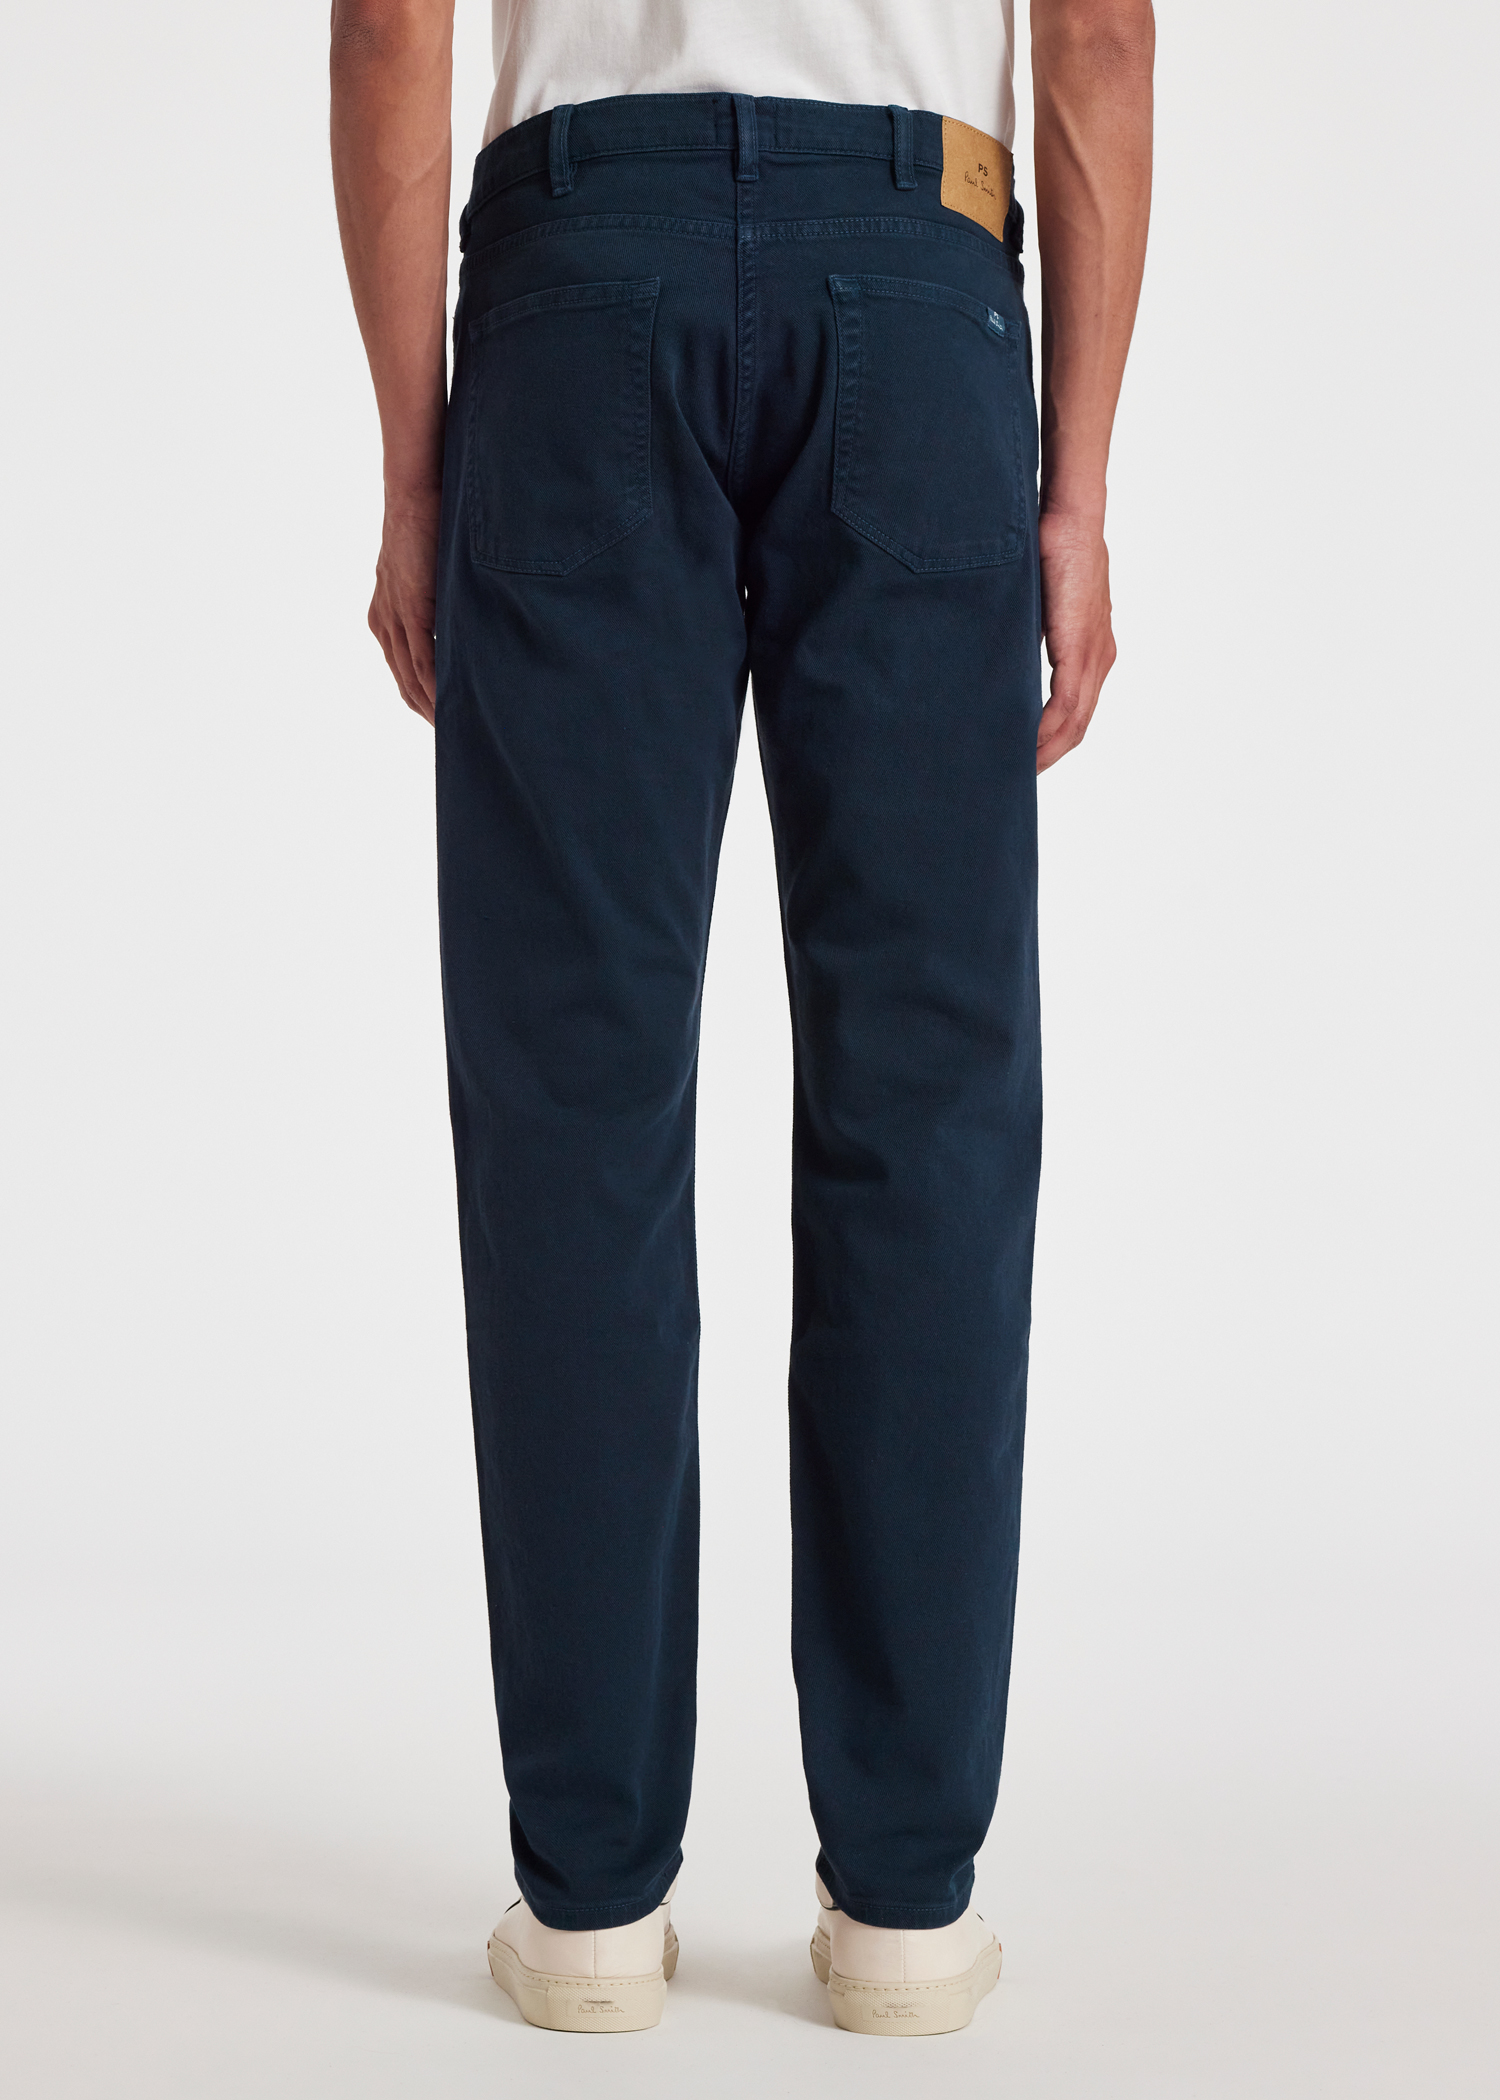 PAUL SMITH Soho Slim-Fit Cotton Suit Trousers for Men